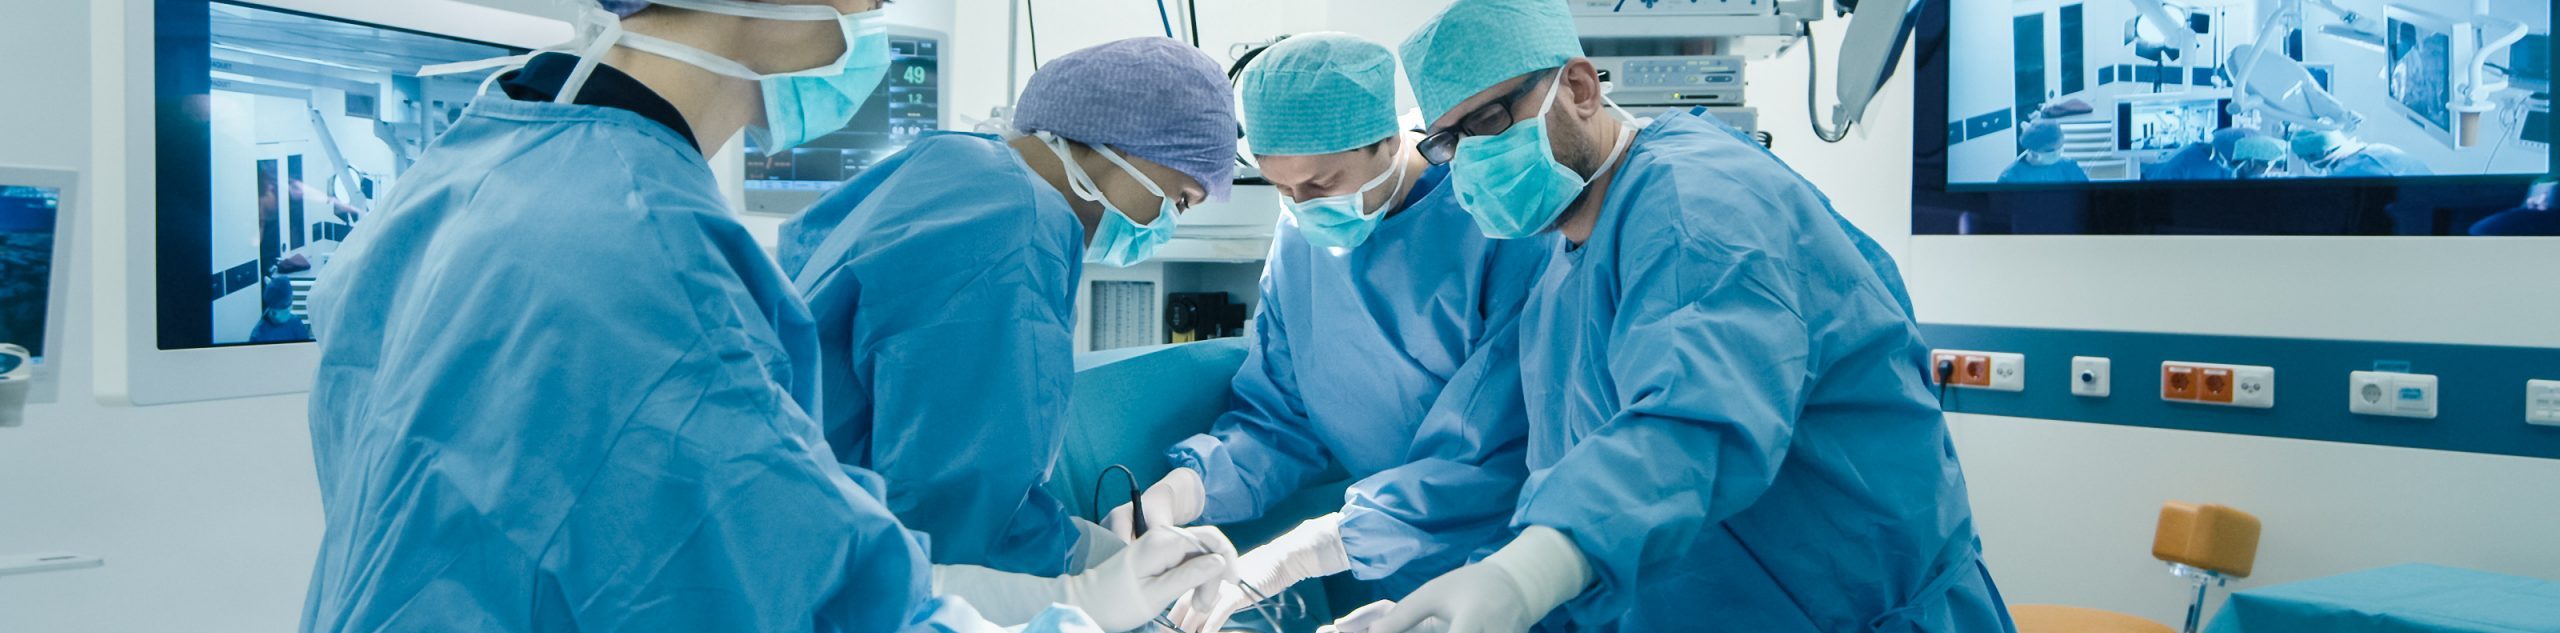 Cardiocirugía: Cirugía mínimamente invasiva